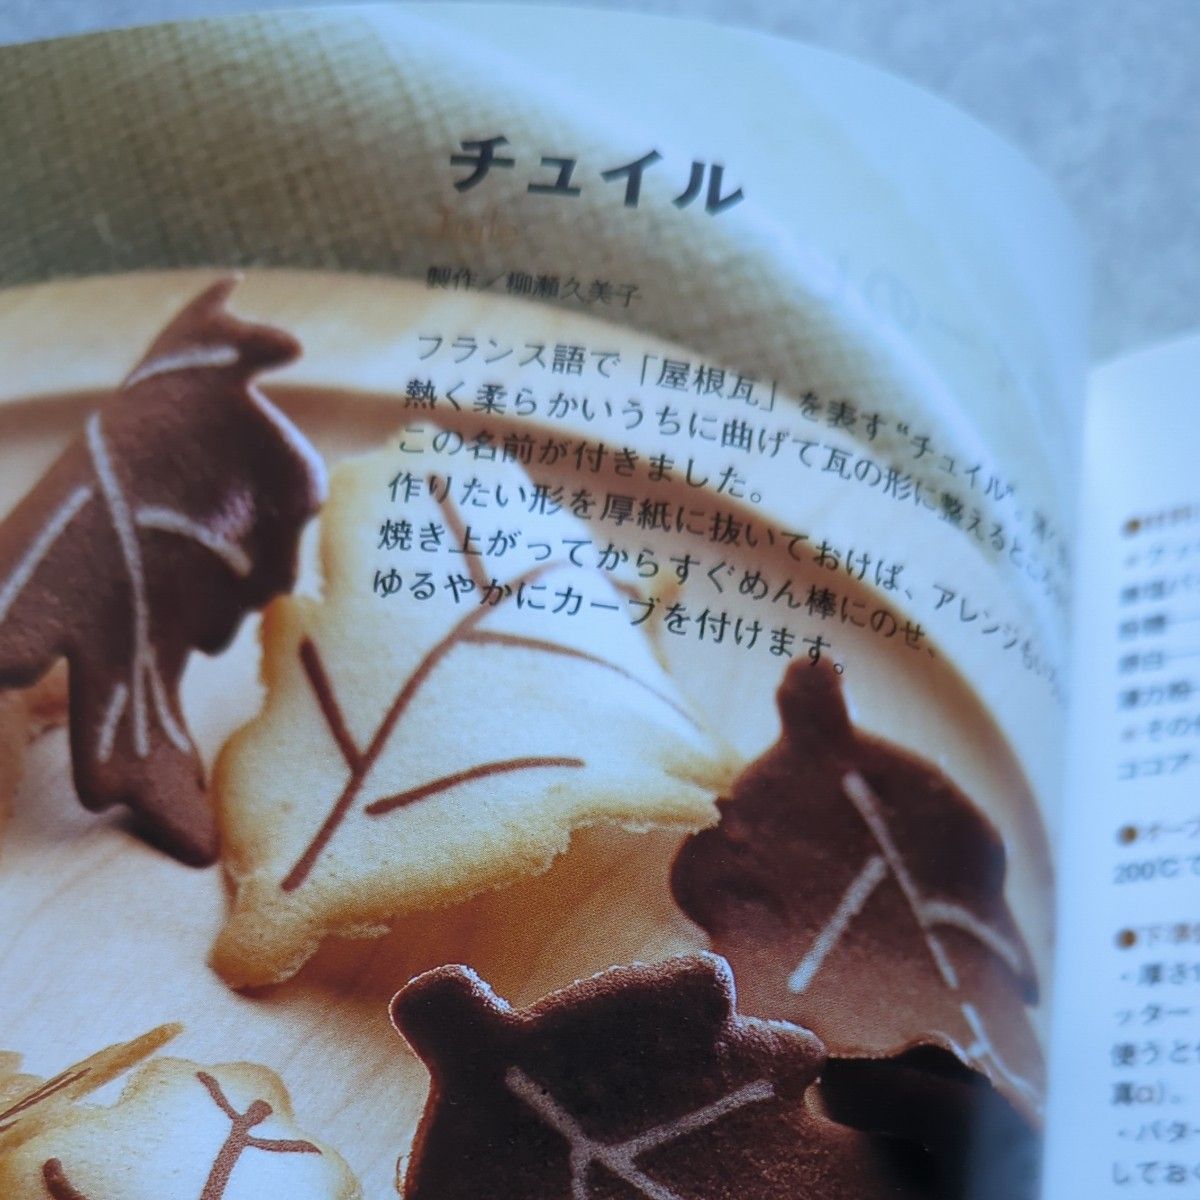 はじめての手作りお菓子　かんたんおいしい１１３レシピ 成美堂出版編集部／編